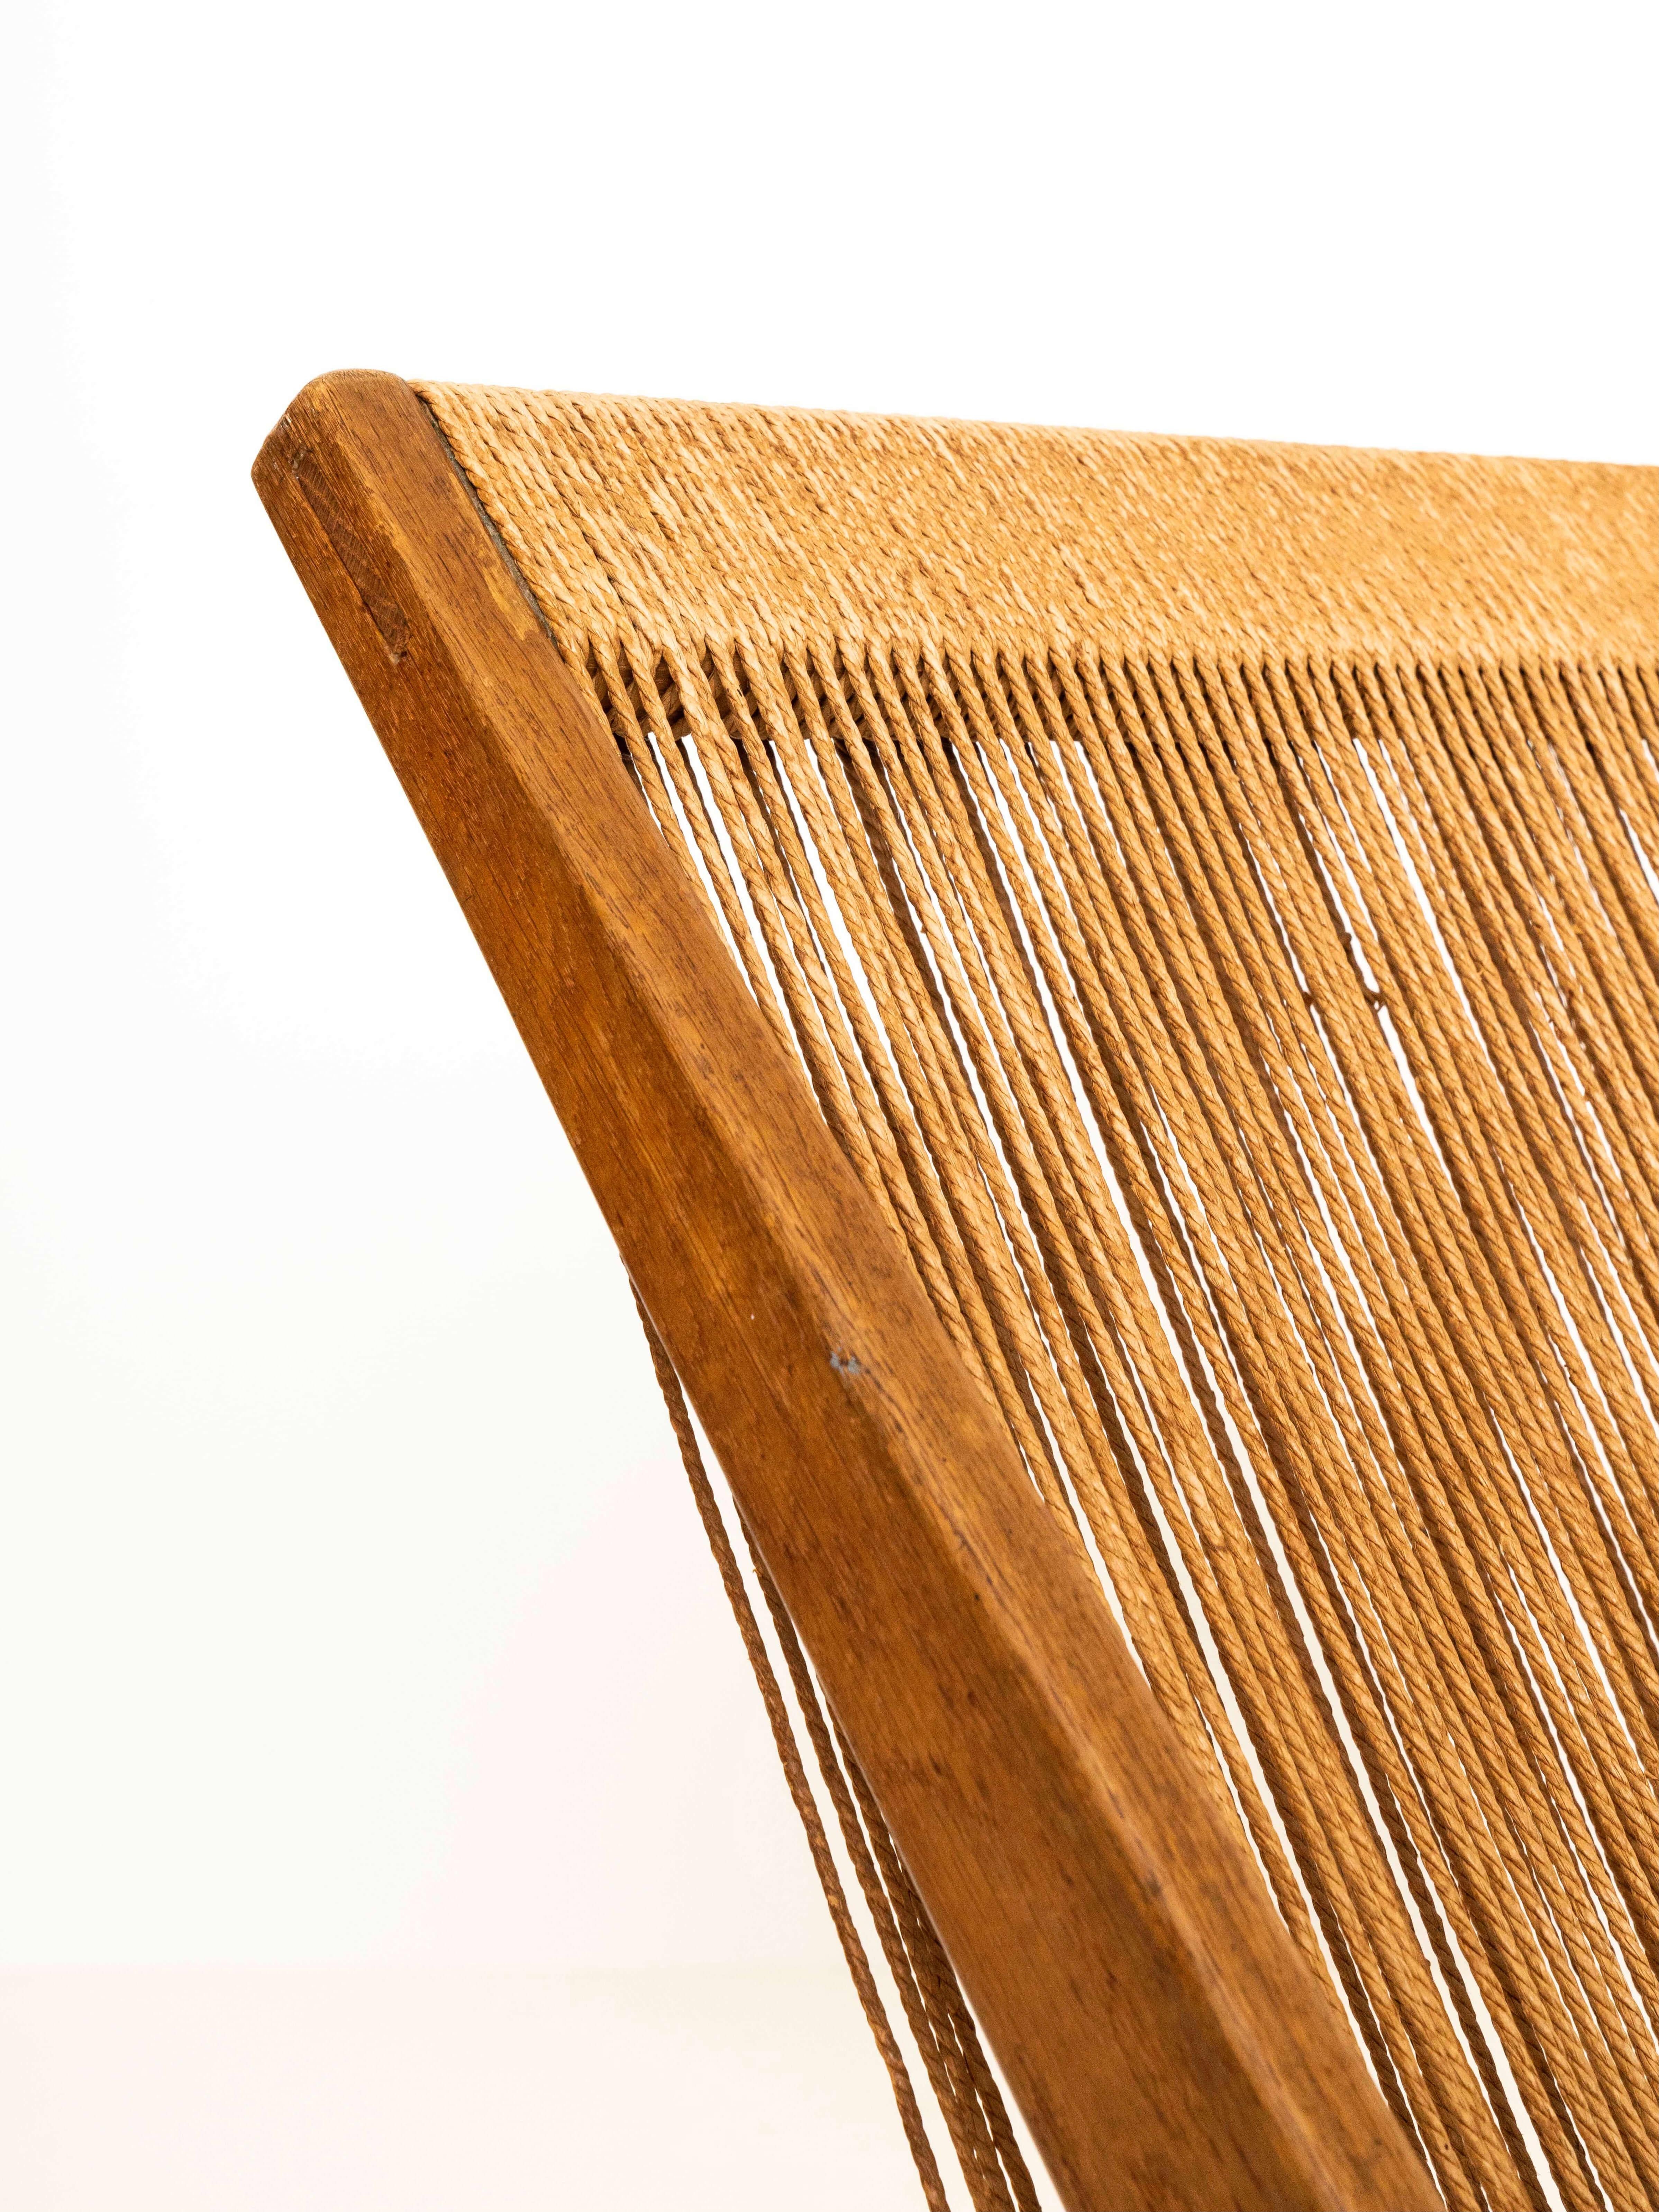 Wood 'Rope Chair' Attributed to Poul Kjaerholm and Jørgen Høj, Denmark, 1960s